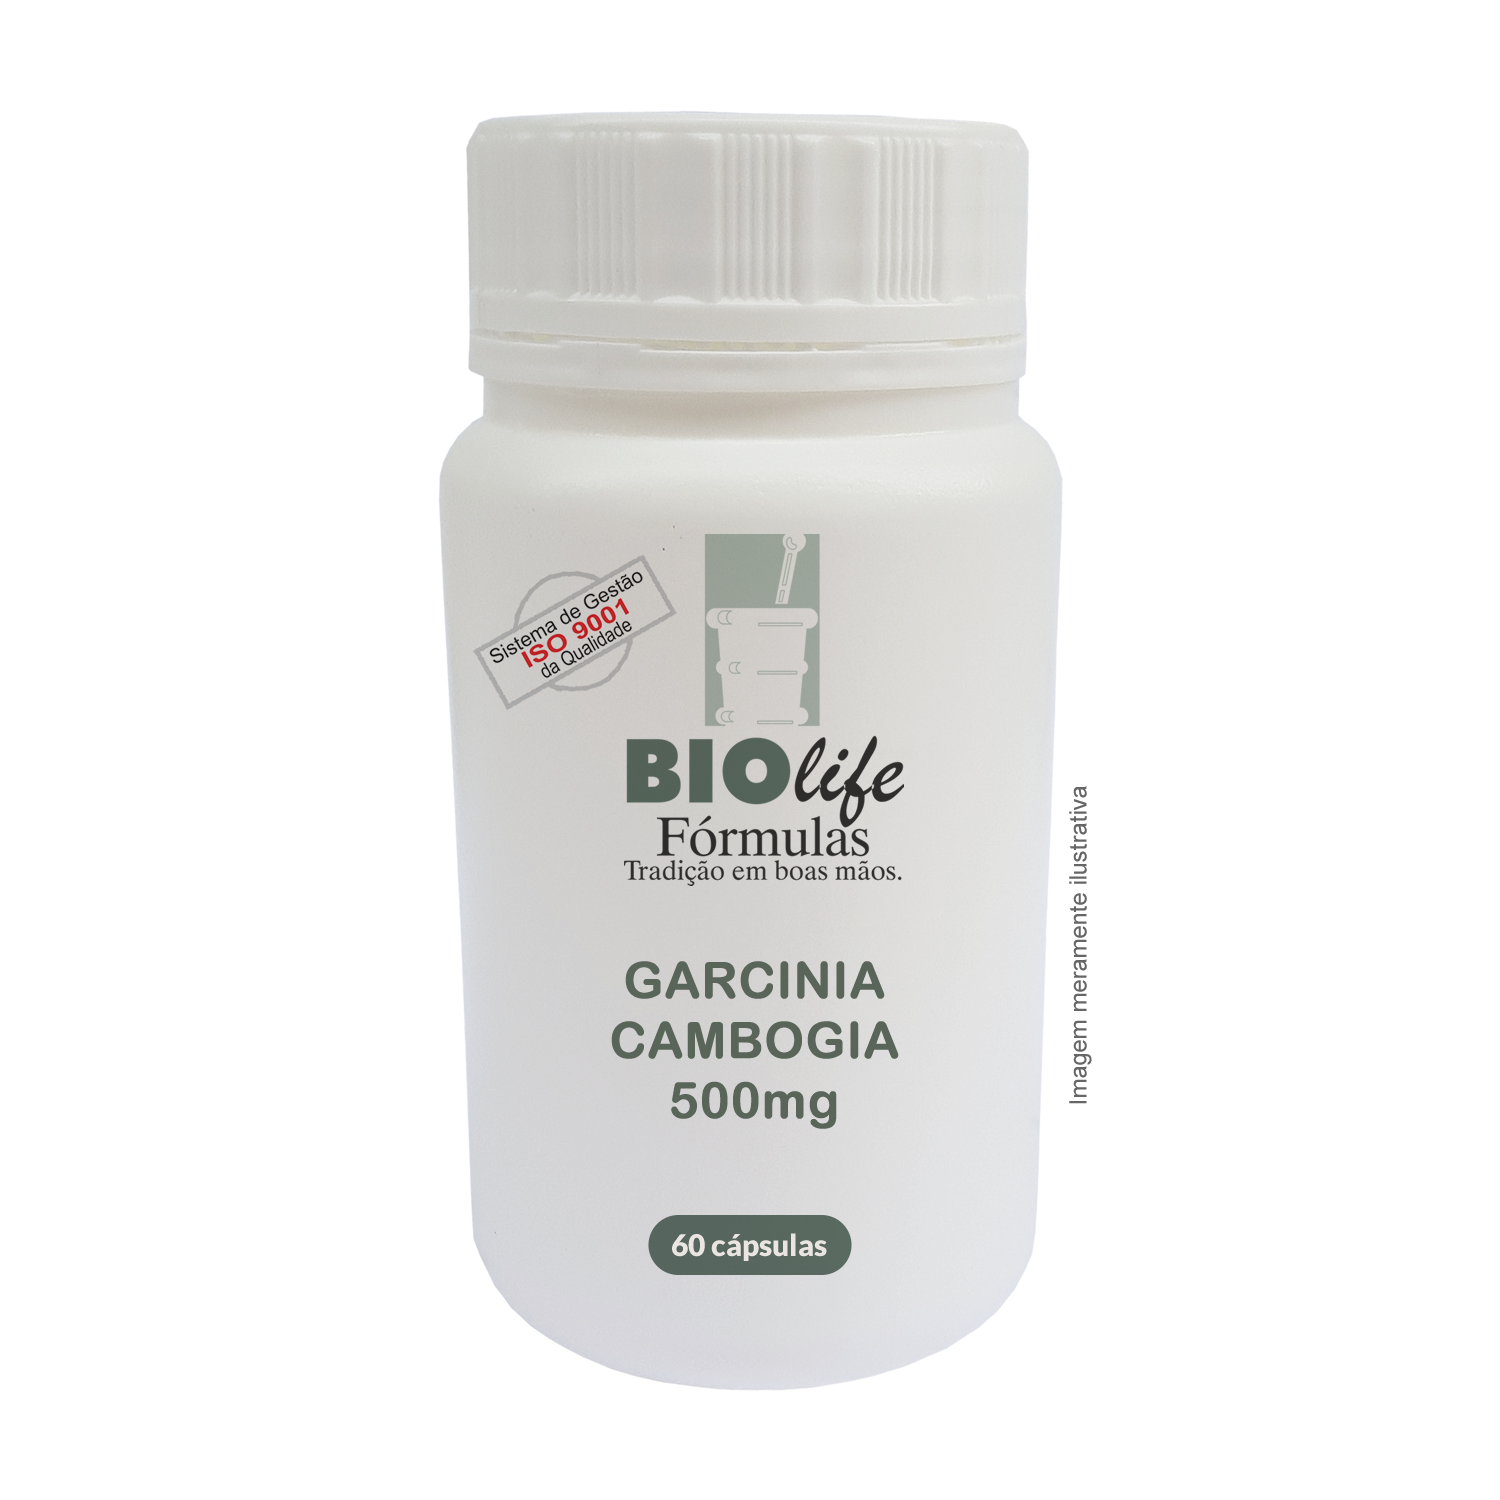 GARCINIA CAMBOGIA 500mg com 60 caps - Dietas de Emagrecimento - BioLife